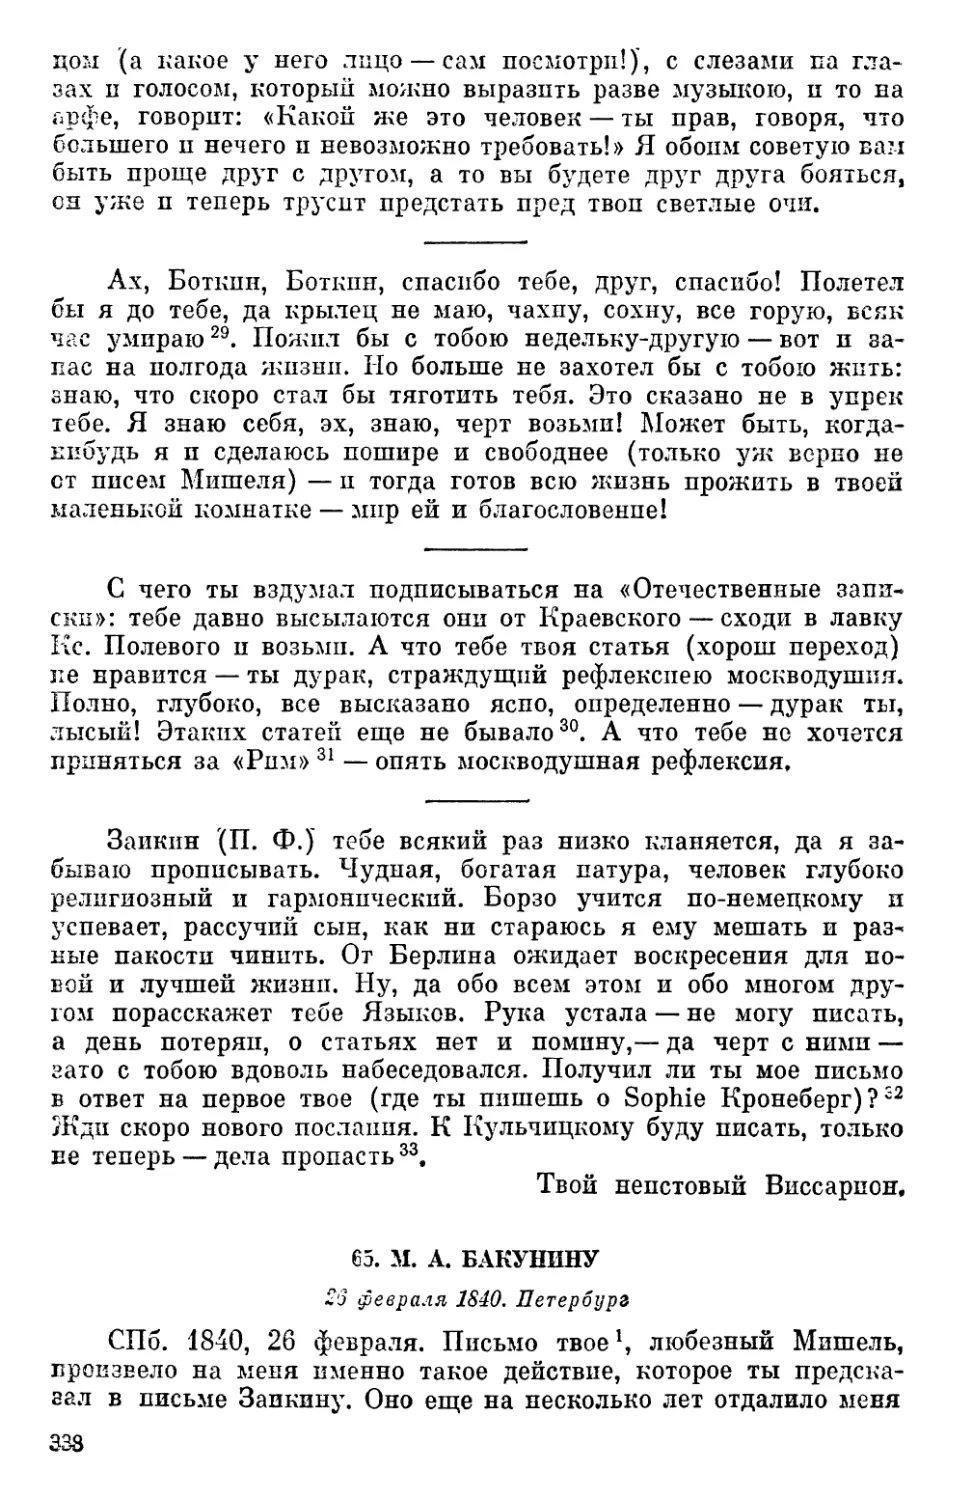 65. М. А. Бакунину. 26 февраля 1840